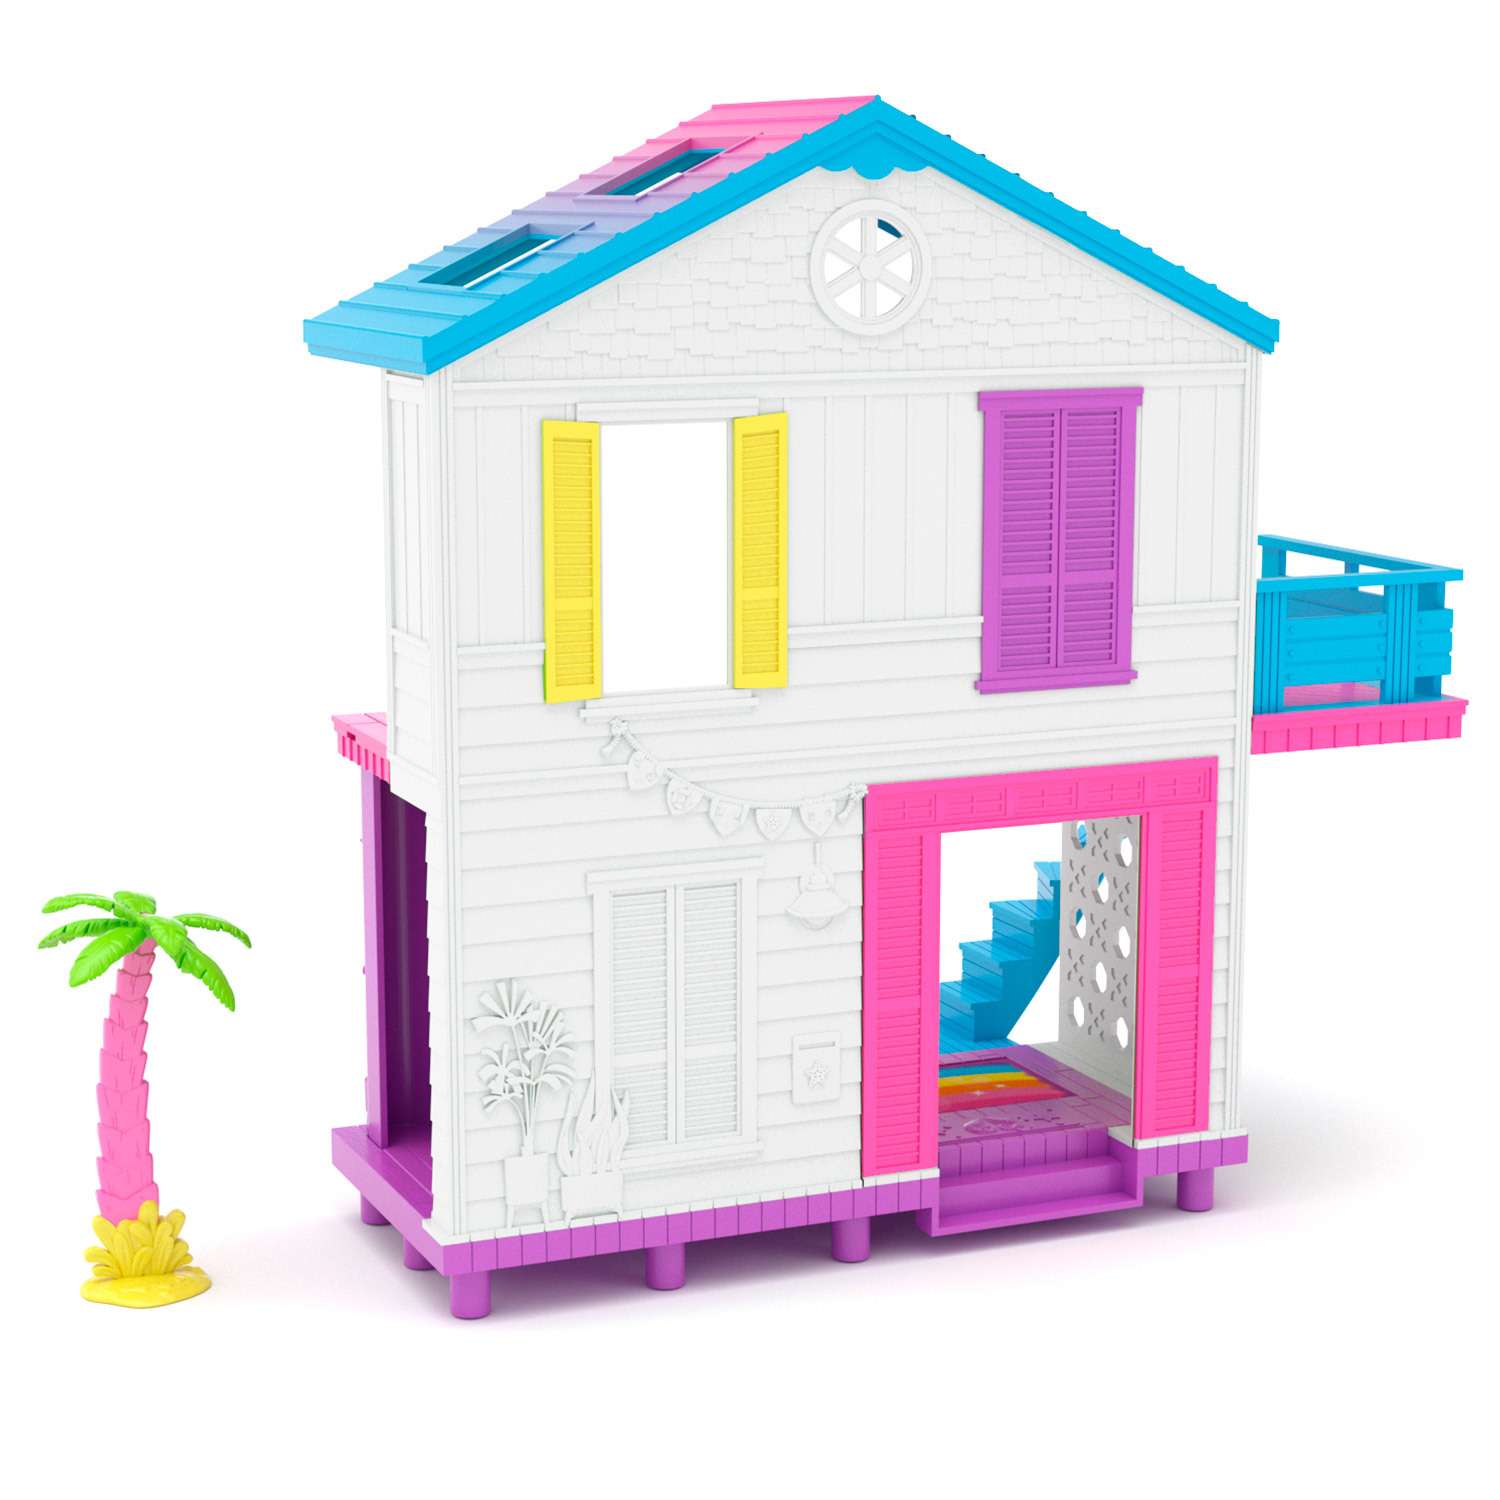 Игрушка Happy Places Shopkins Пляжный домик в непрозрачной упаковке (Сюрприз) 56860 - фото 6